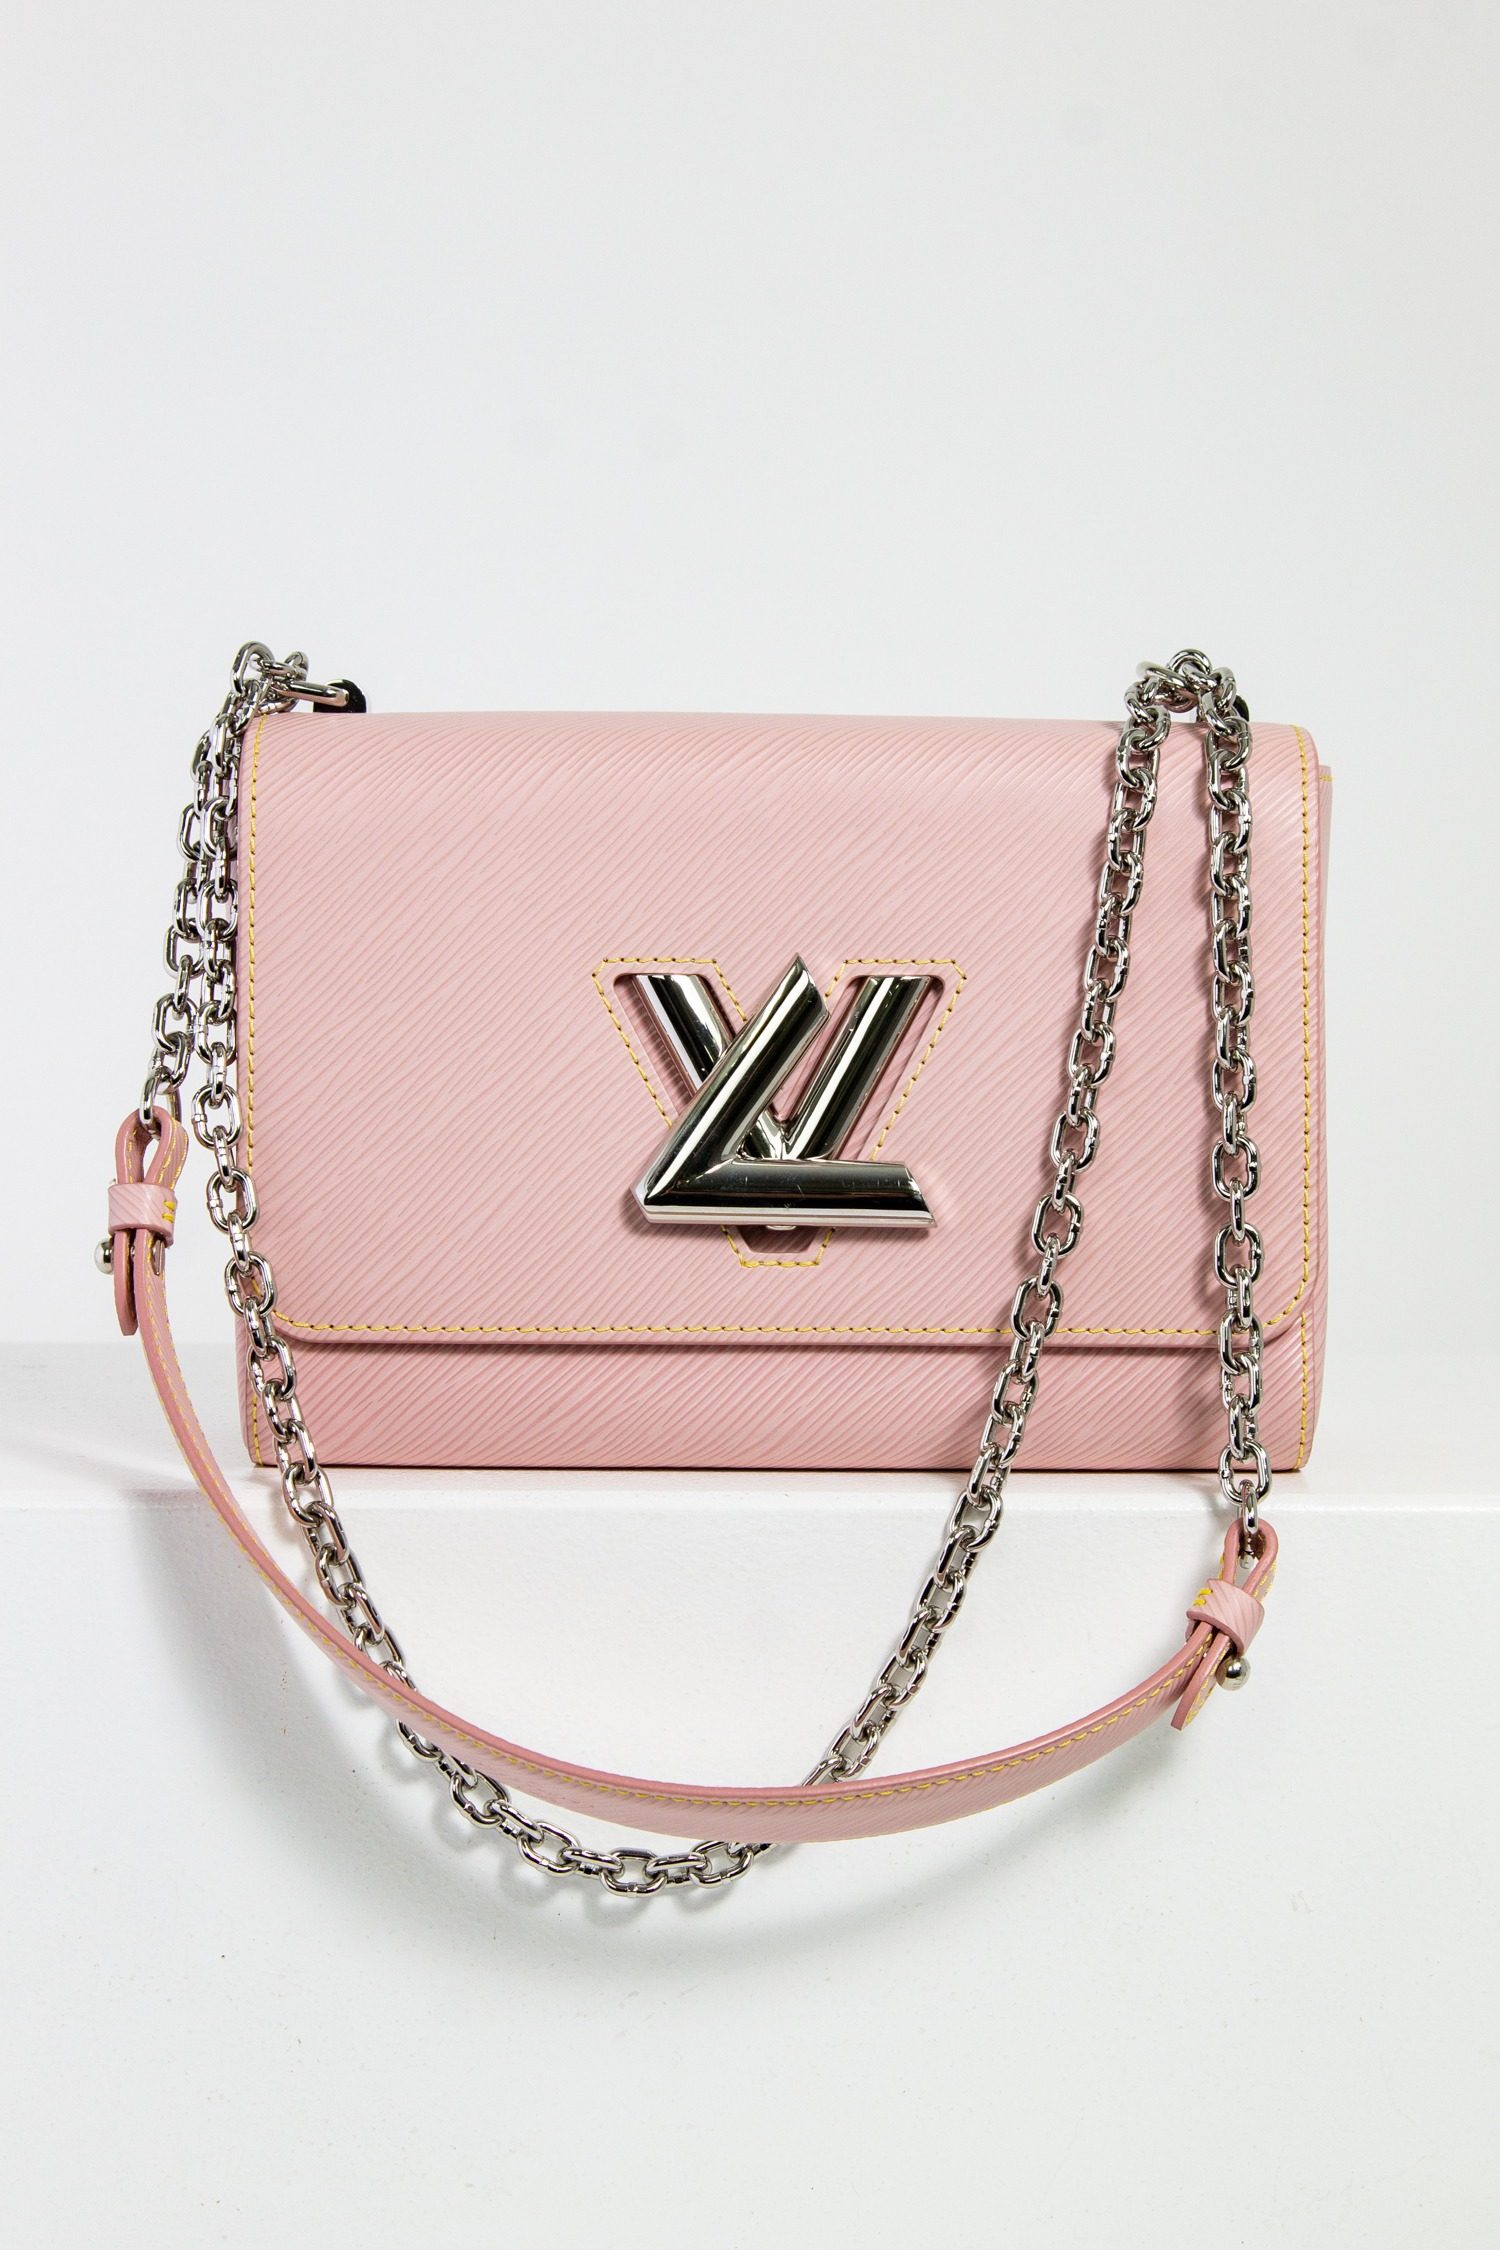 Louis Vuitton Schultertasche "Twist" in rosa